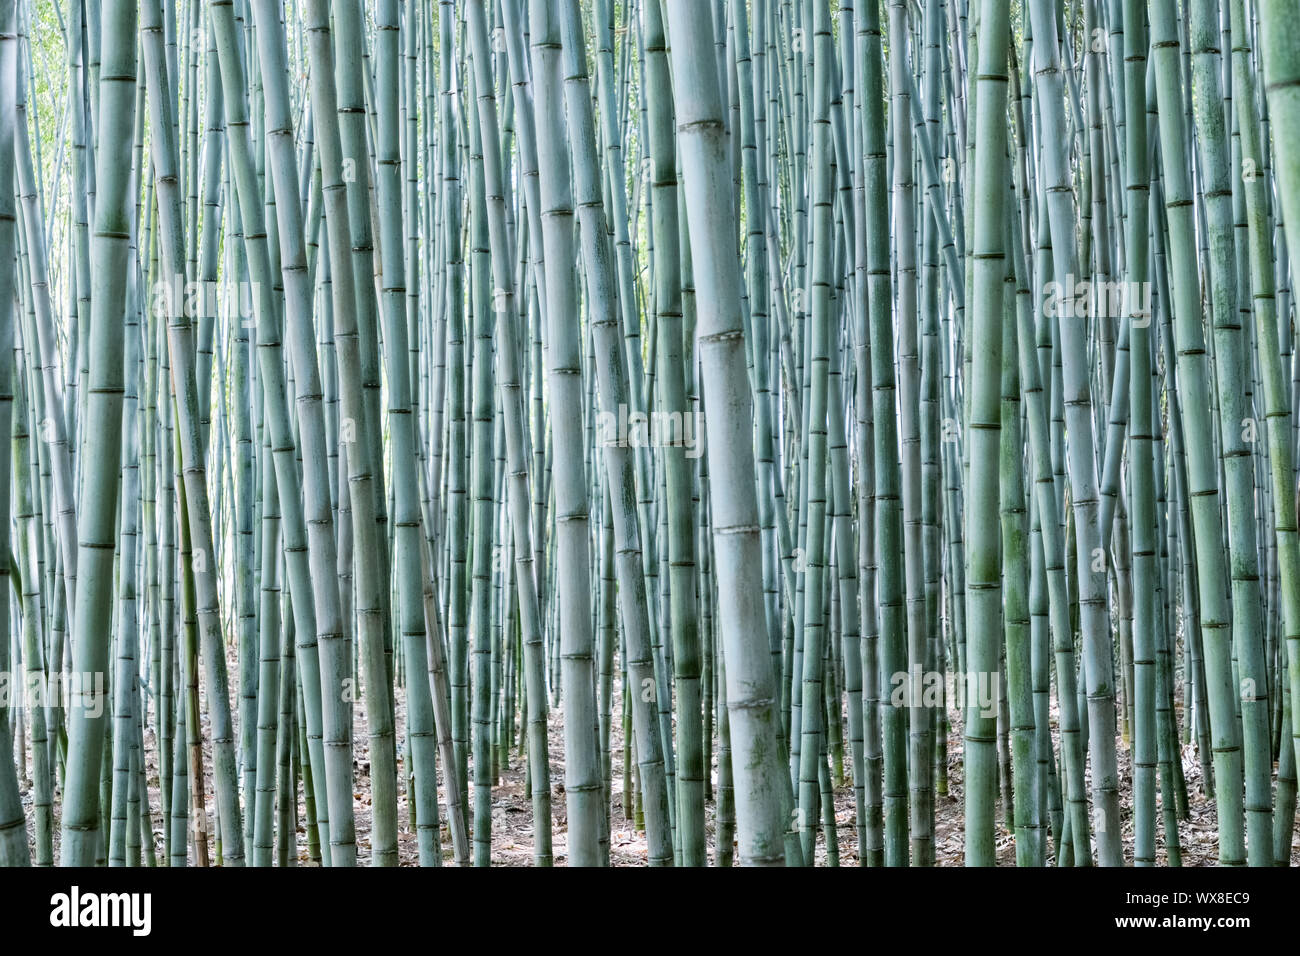 dense bamboo grove Stock Photo